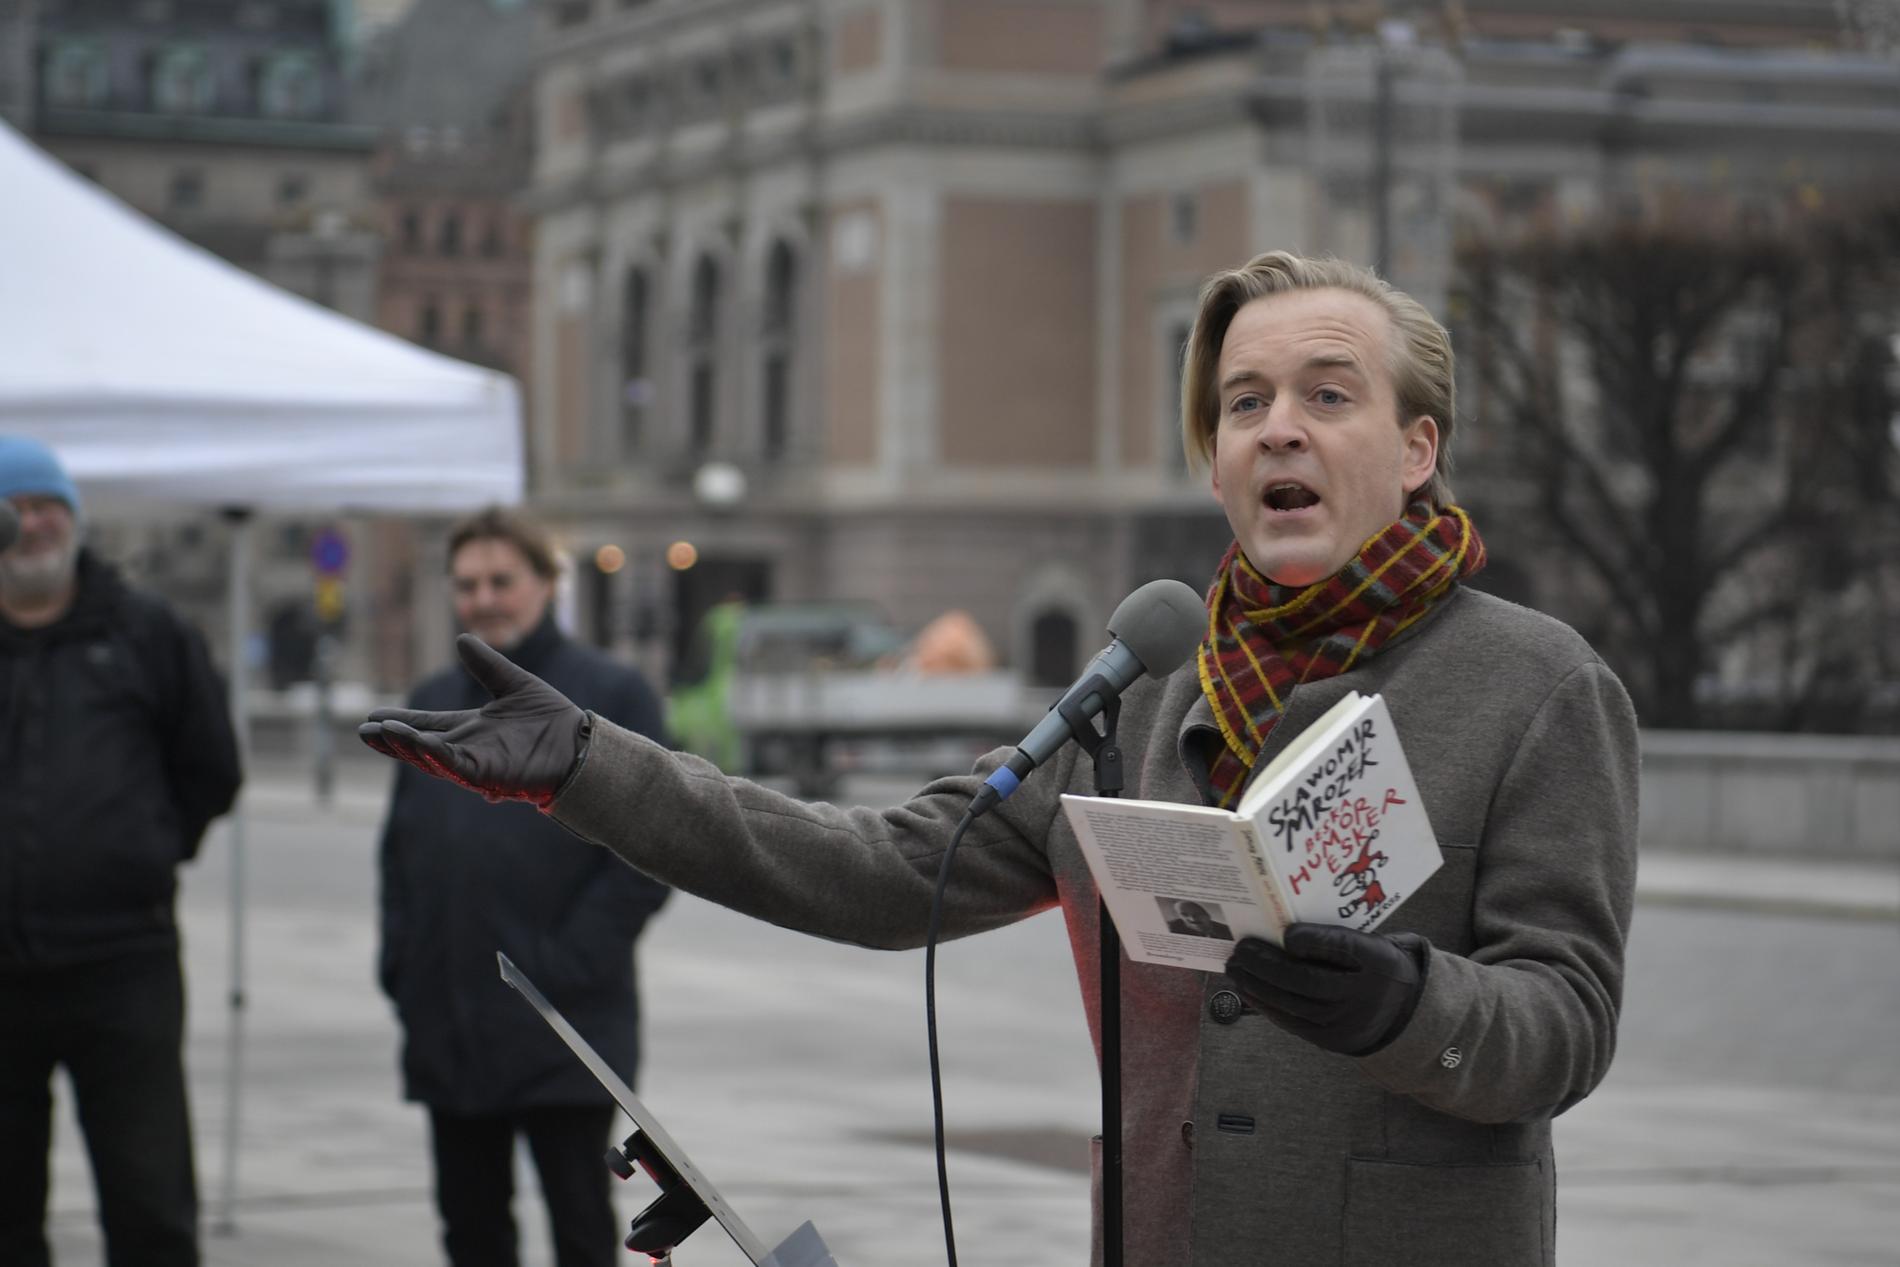 Skådespelaren Andreas T Olsson talar när skådespelare från Dramaten demonstrerar mot publikrestriktioner utanför riksdagshuset.